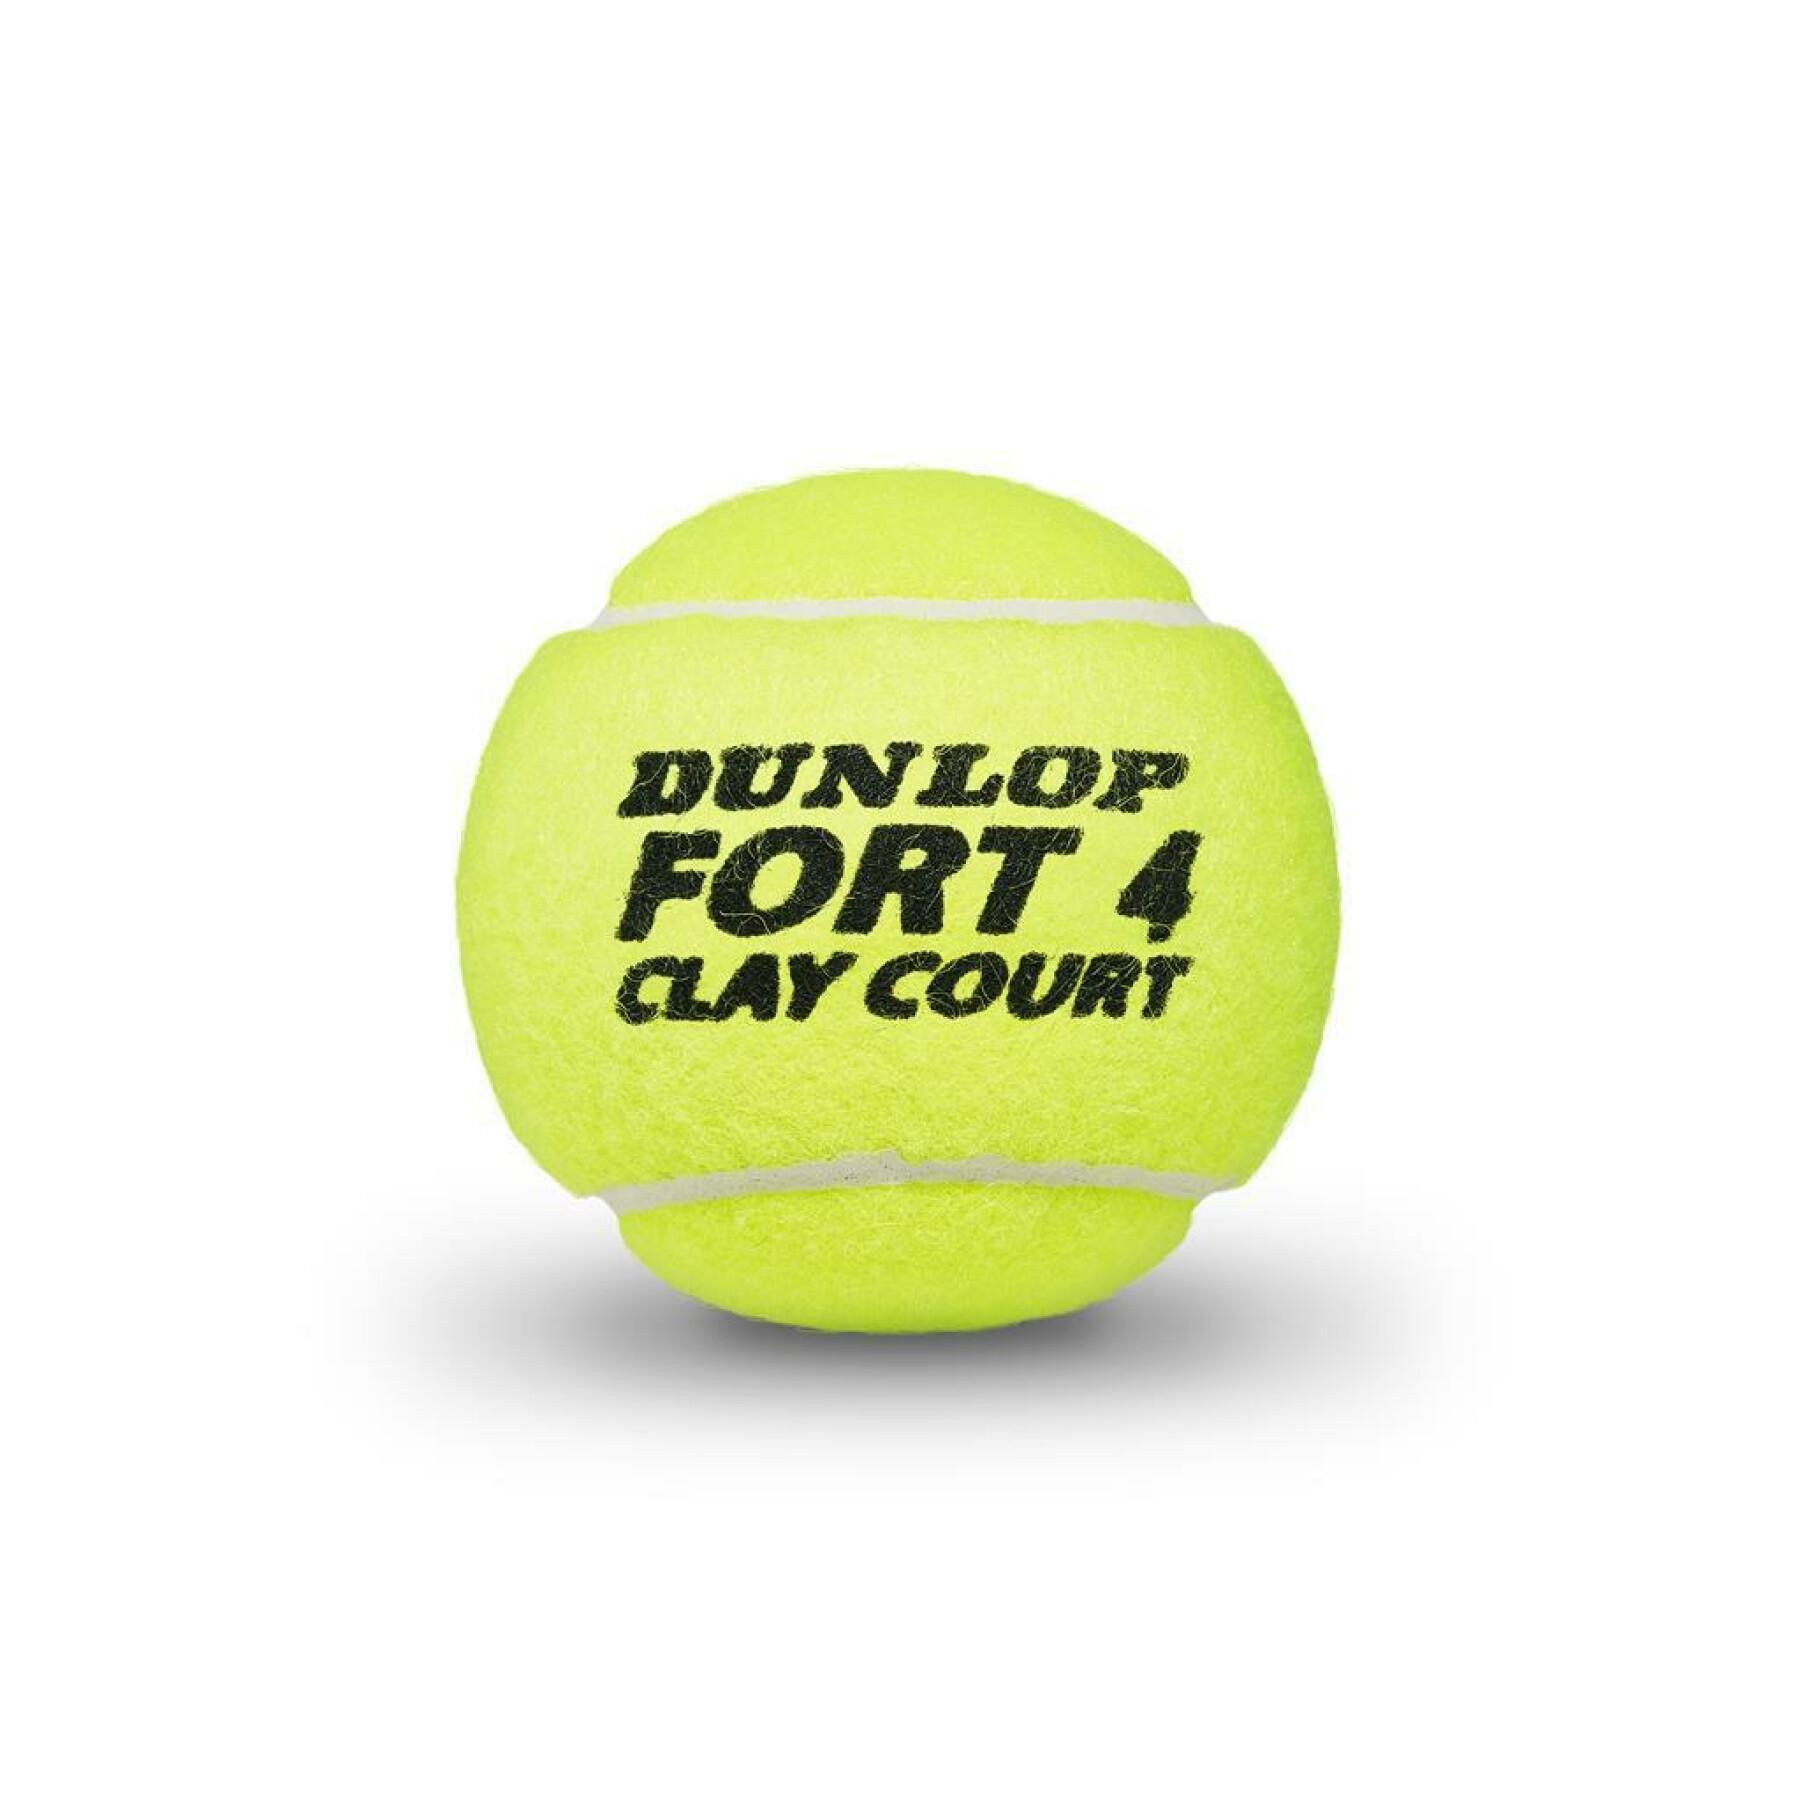 Satz mit 4 Tennisbällen Dunlop fort clay court 4tin